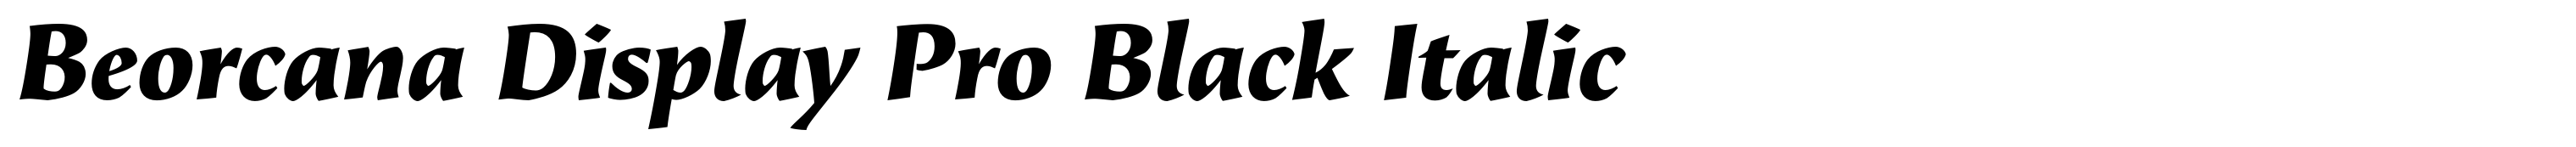 Beorcana Display Pro Black Italic